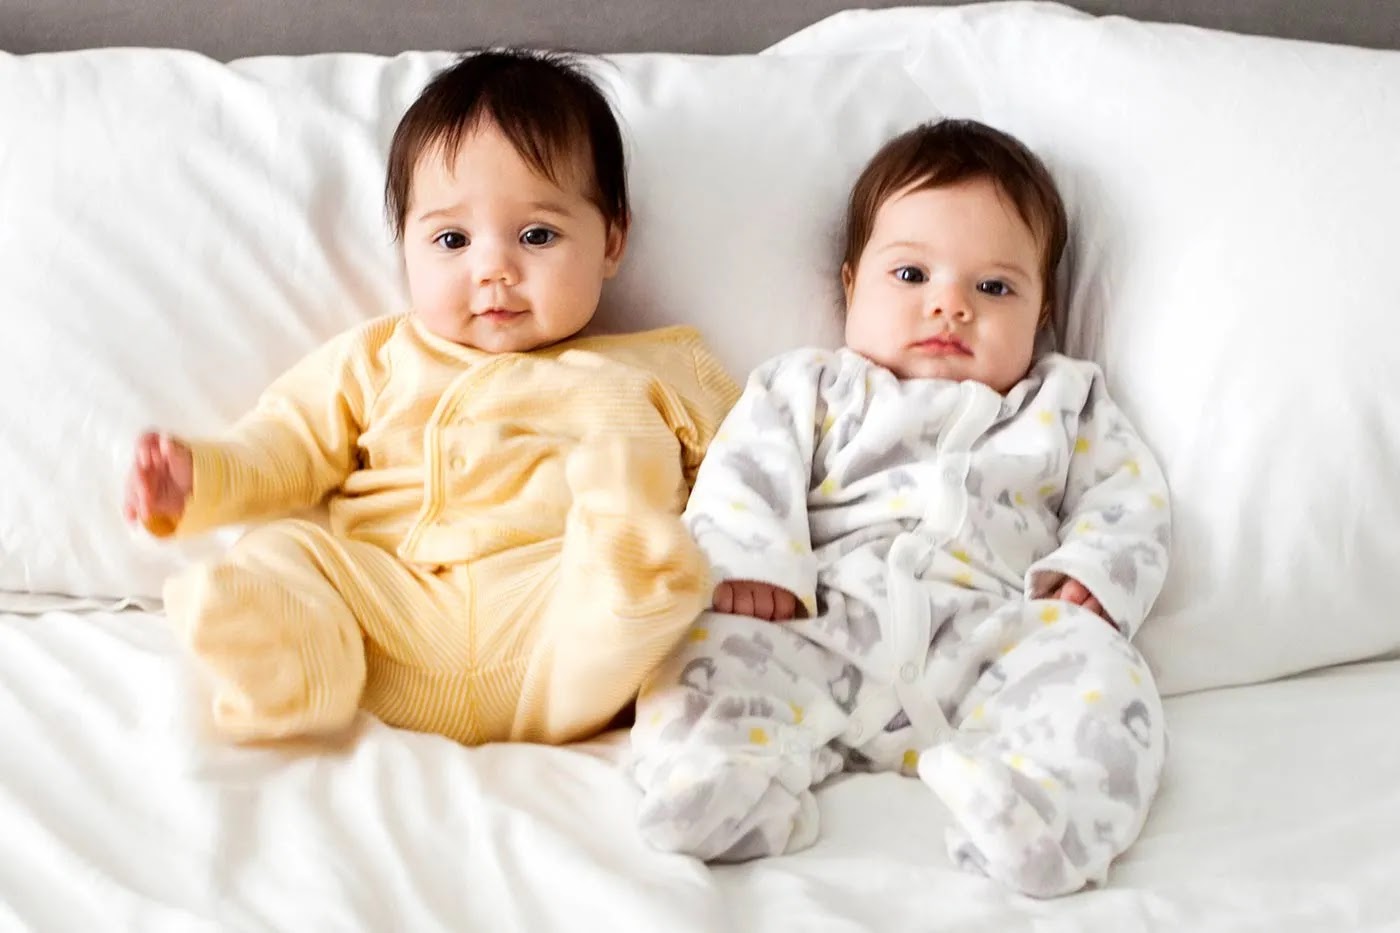 Twin Baby Pic - Twin Baby Picture - Cute Baby Picture - Cute Baby Pic Download - Cute Baby Pic hd - Twin Baby Picture - cute baby picture - NeotericIT.com